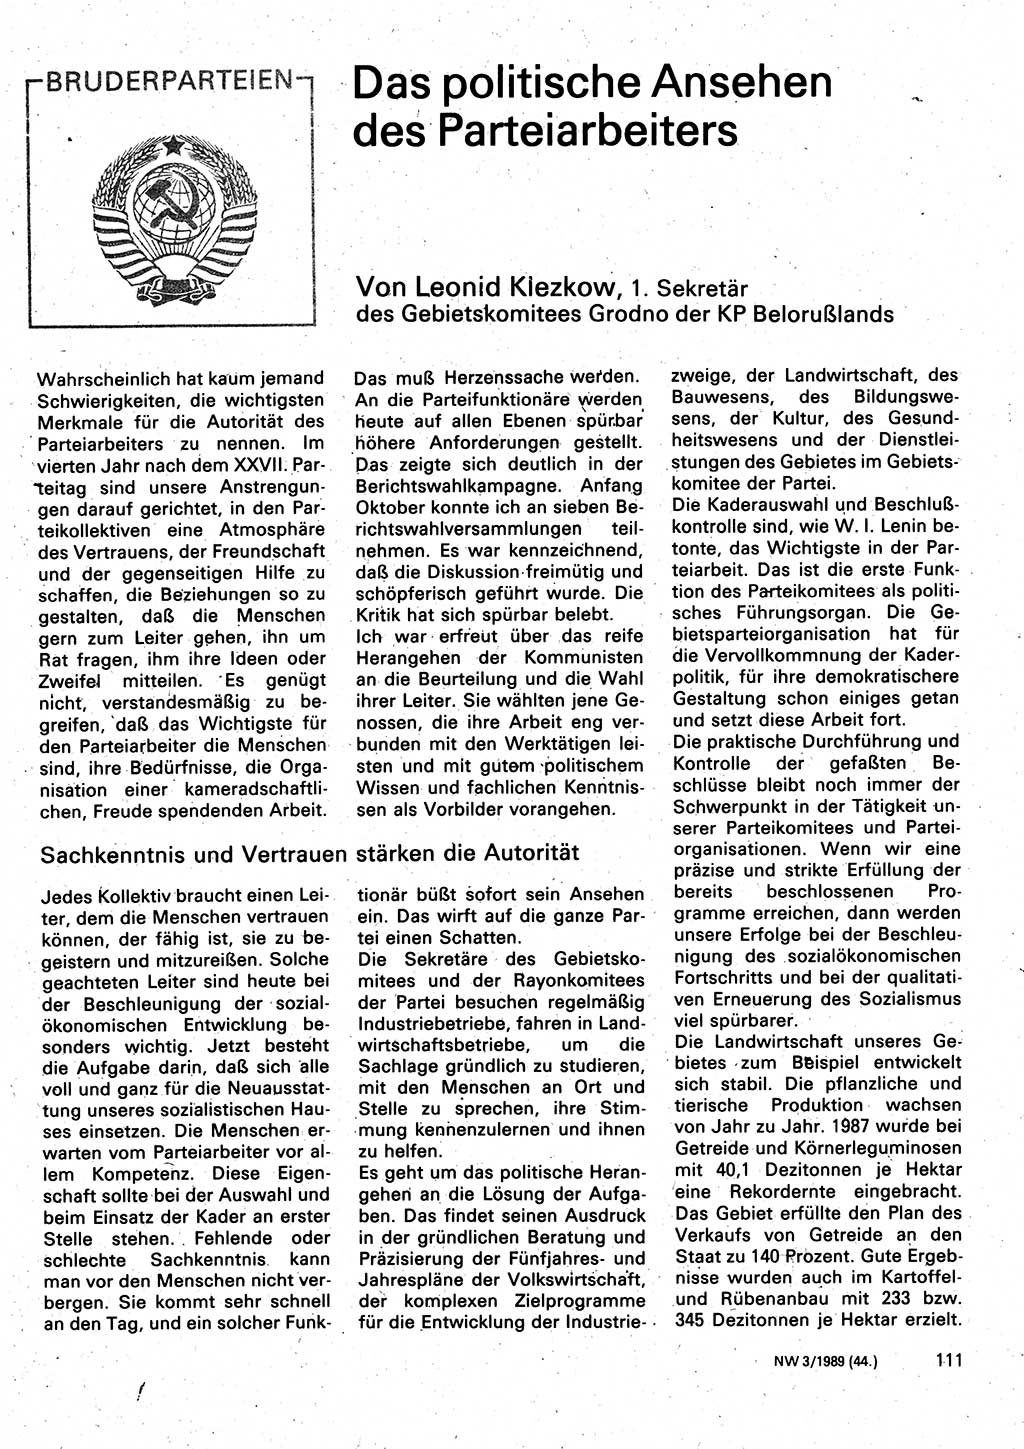 Neuer Weg (NW), Organ des Zentralkomitees (ZK) der SED (Sozialistische Einheitspartei Deutschlands) für Fragen des Parteilebens, 44. Jahrgang [Deutsche Demokratische Republik (DDR)] 1989, Seite 111 (NW ZK SED DDR 1989, S. 111)